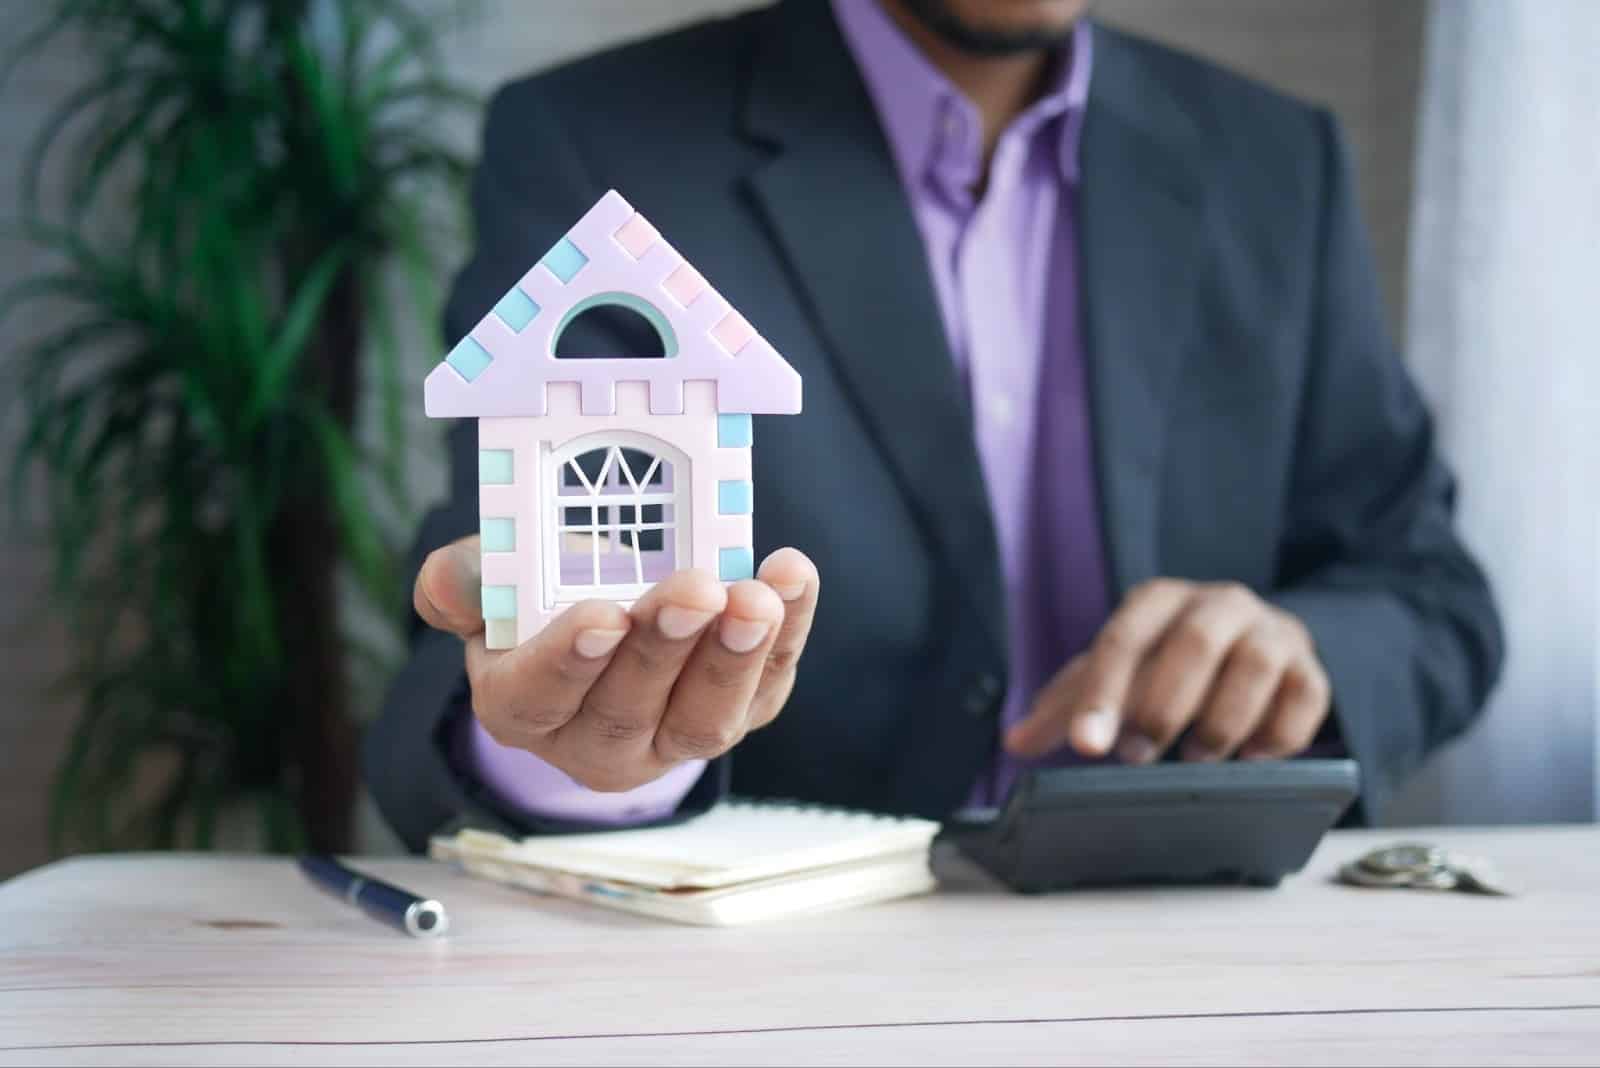 homme tenant une maison illustrant un modèle d'offre d'achat immobilier